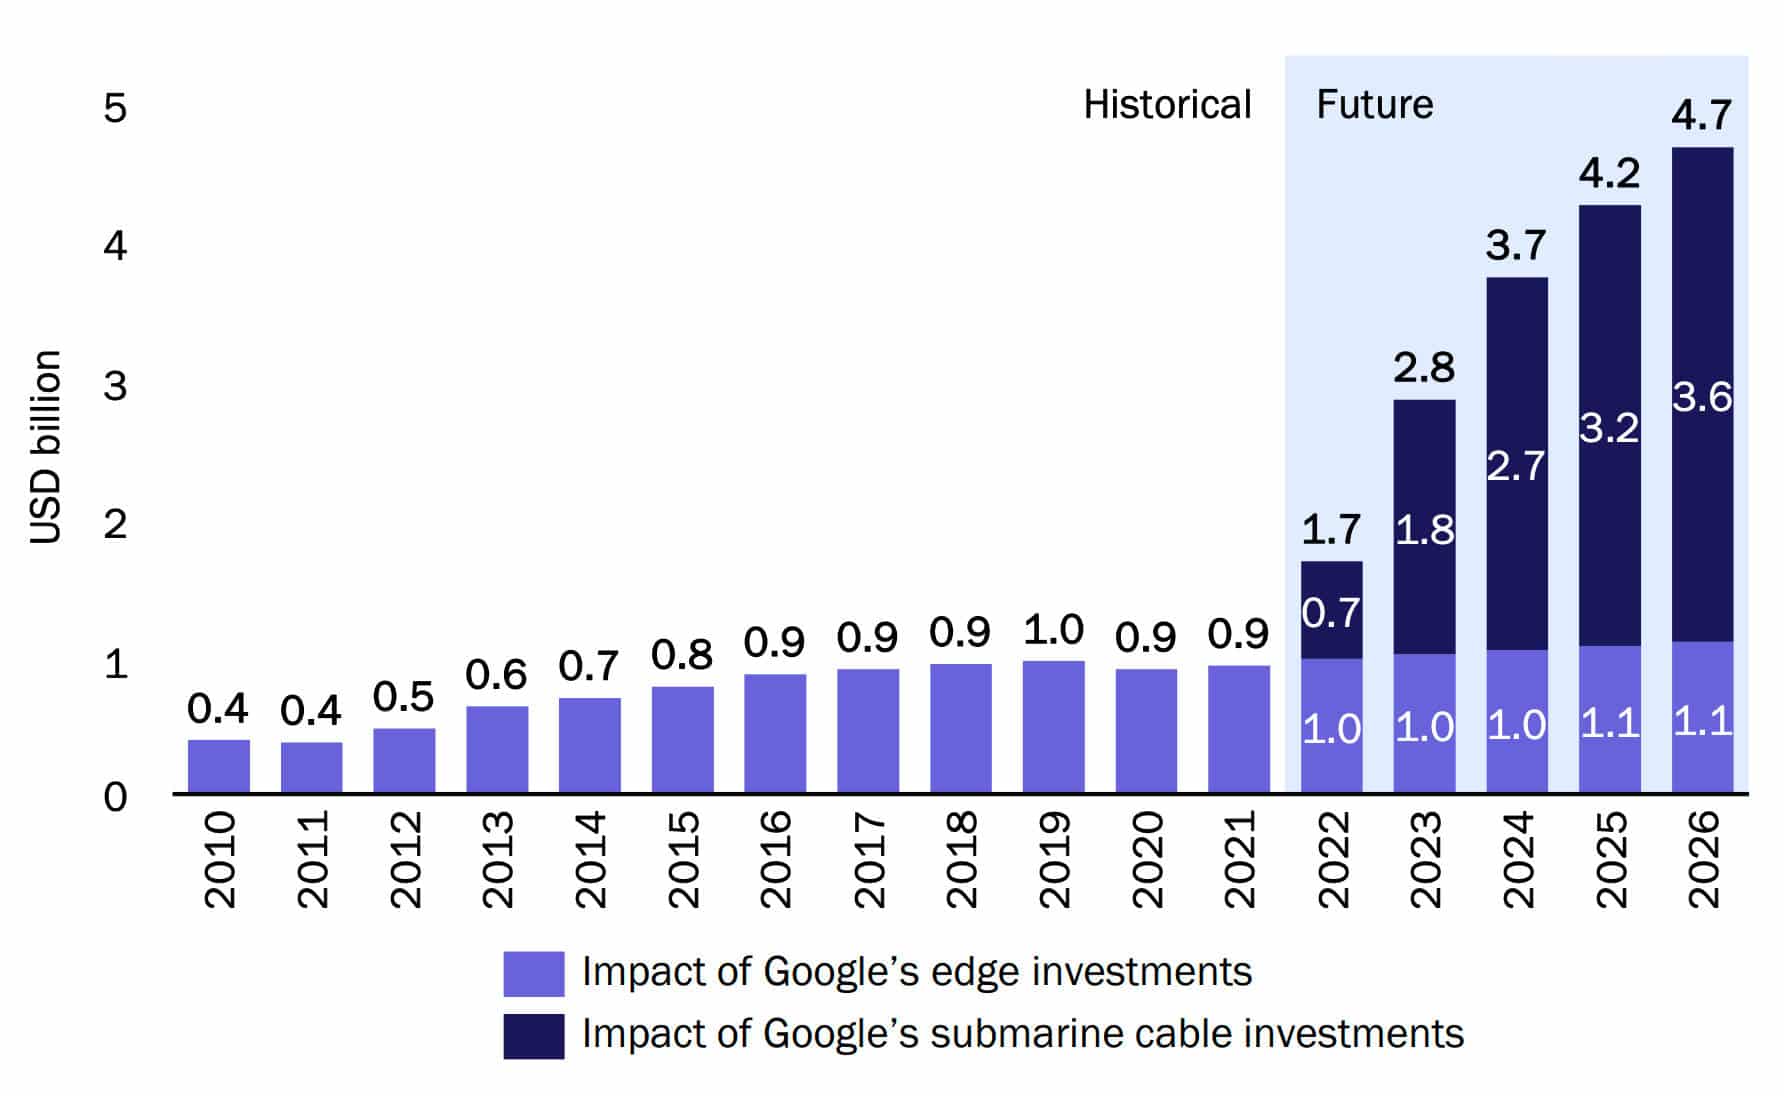 Stigning i det reale BNP som følge af Googles netværksinvesteringer i Thailand 